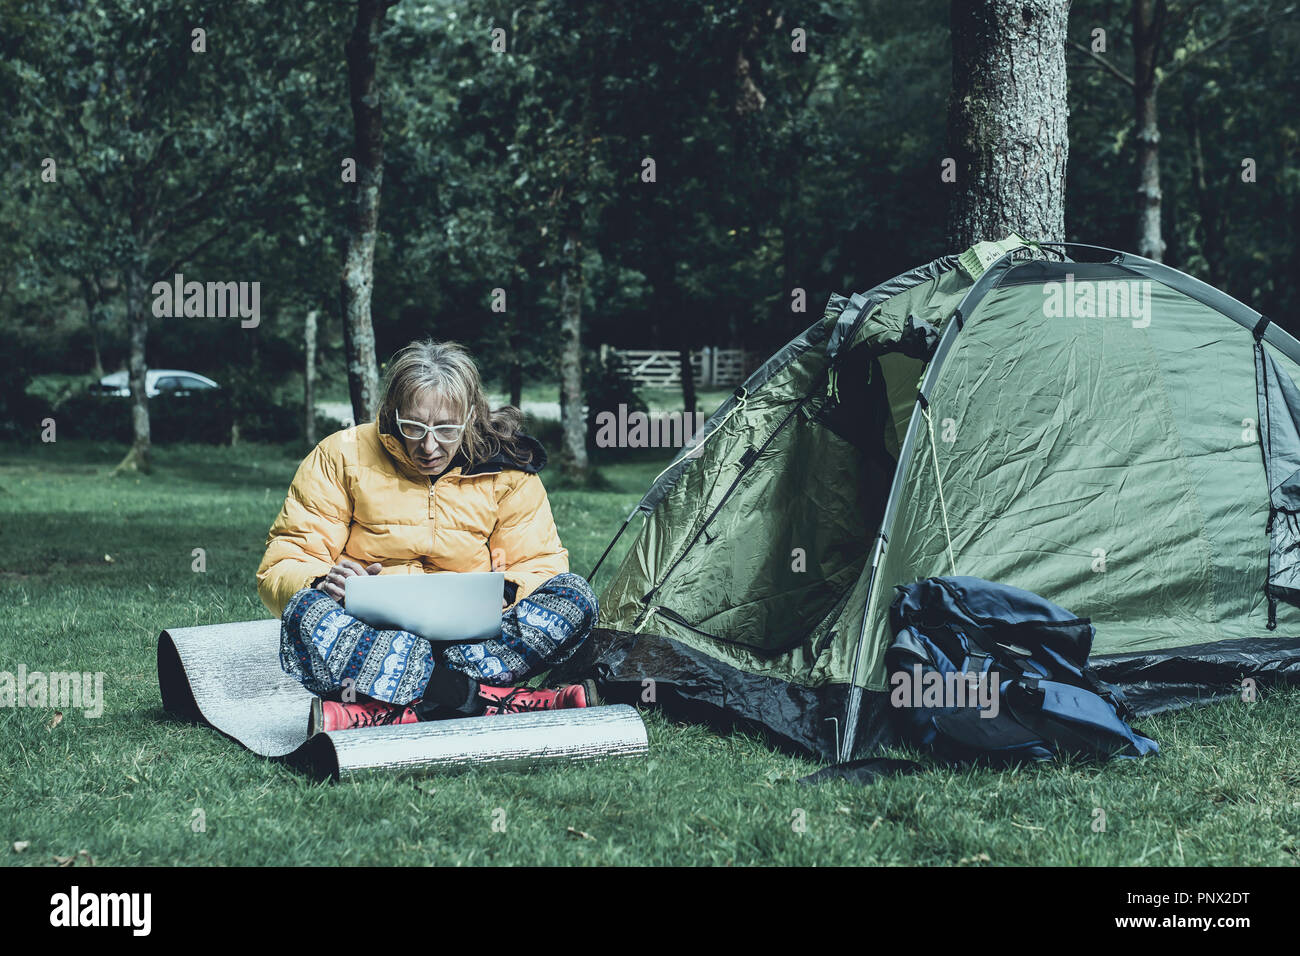 Beiläufig Mann bei der Arbeit auf seinem Laptop gekleidet, am Campingplatz in ländlichen uk. Mobile Internet Zugang, der Menschen in entlegenen Ort zu arbeiten. Stockfoto